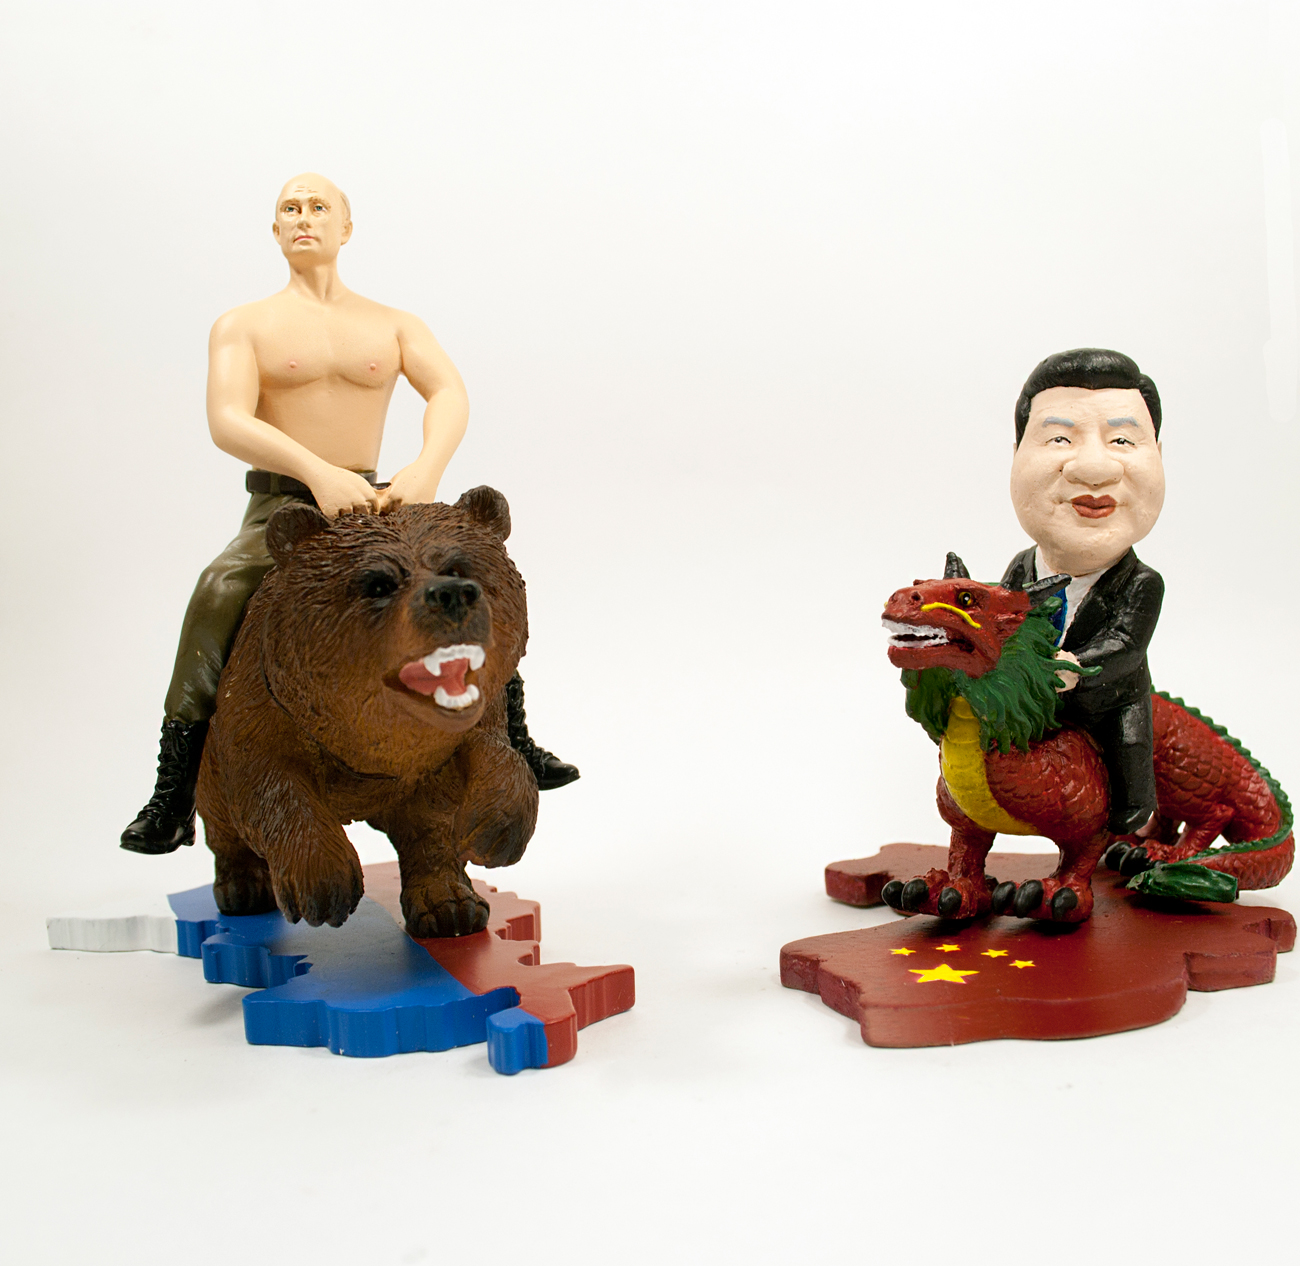 Emresas rusas empiezan a fabricar objetos con la imagen de Vladímir Putin